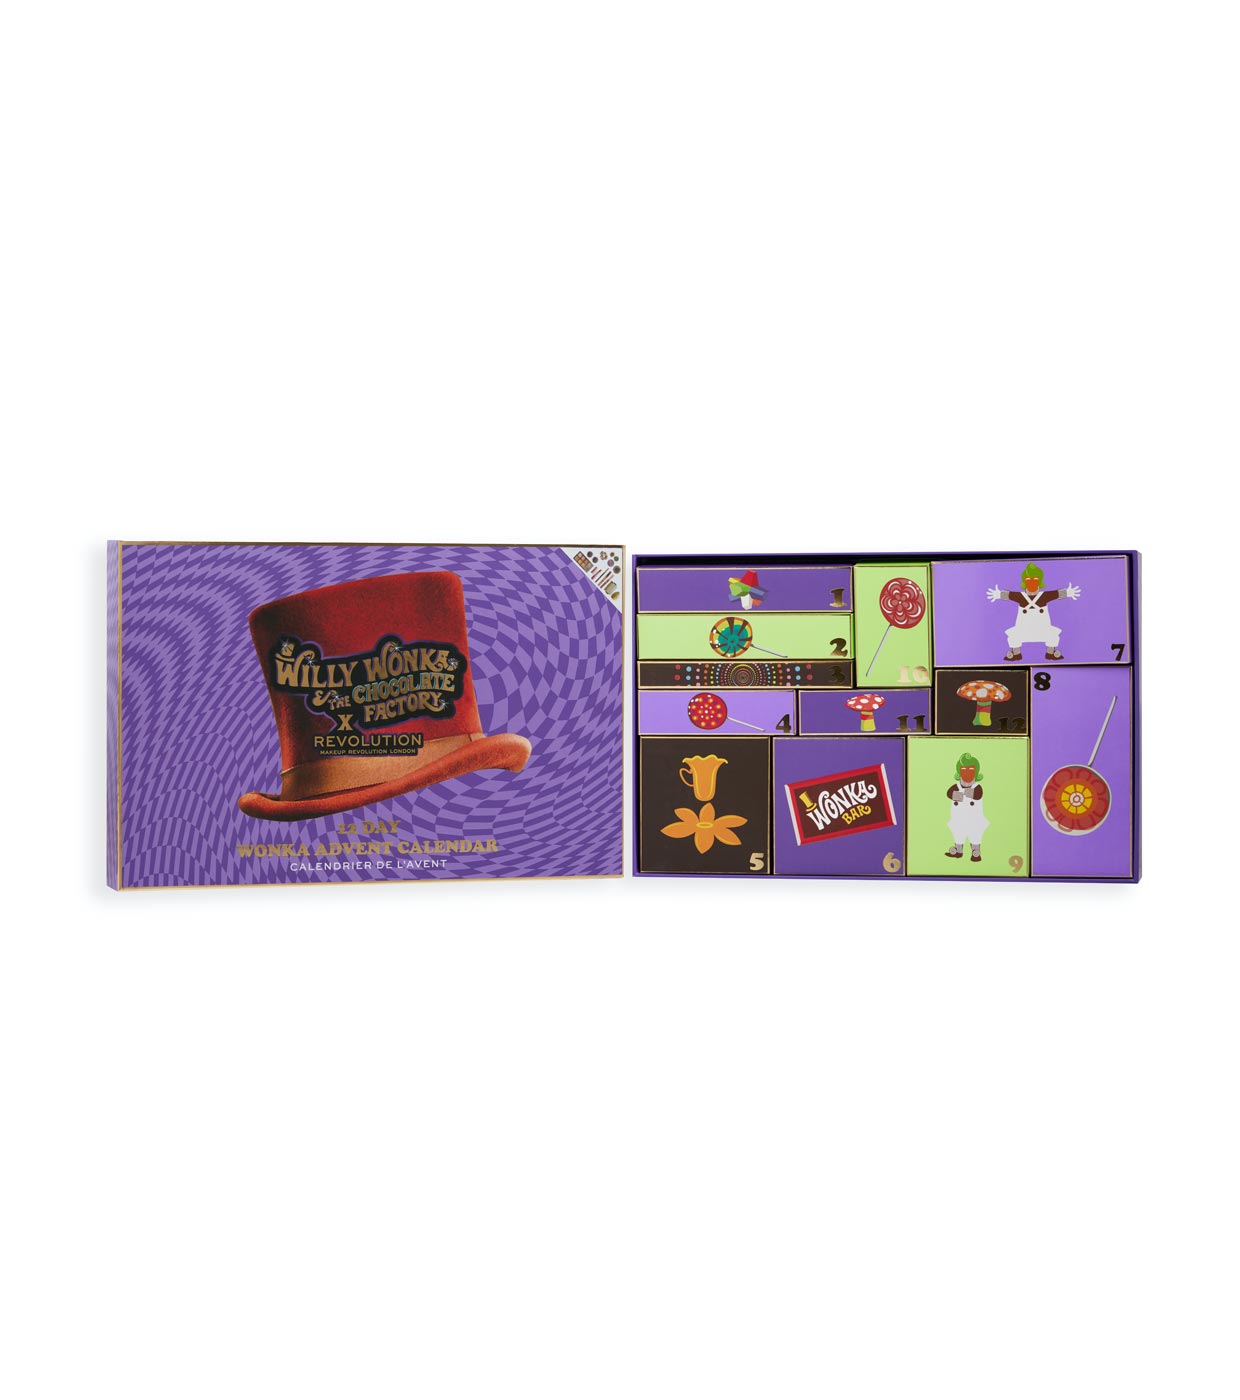 Revolution - *Willy Wonka & The chocolate factory* - Calendário do Advento 12 dias